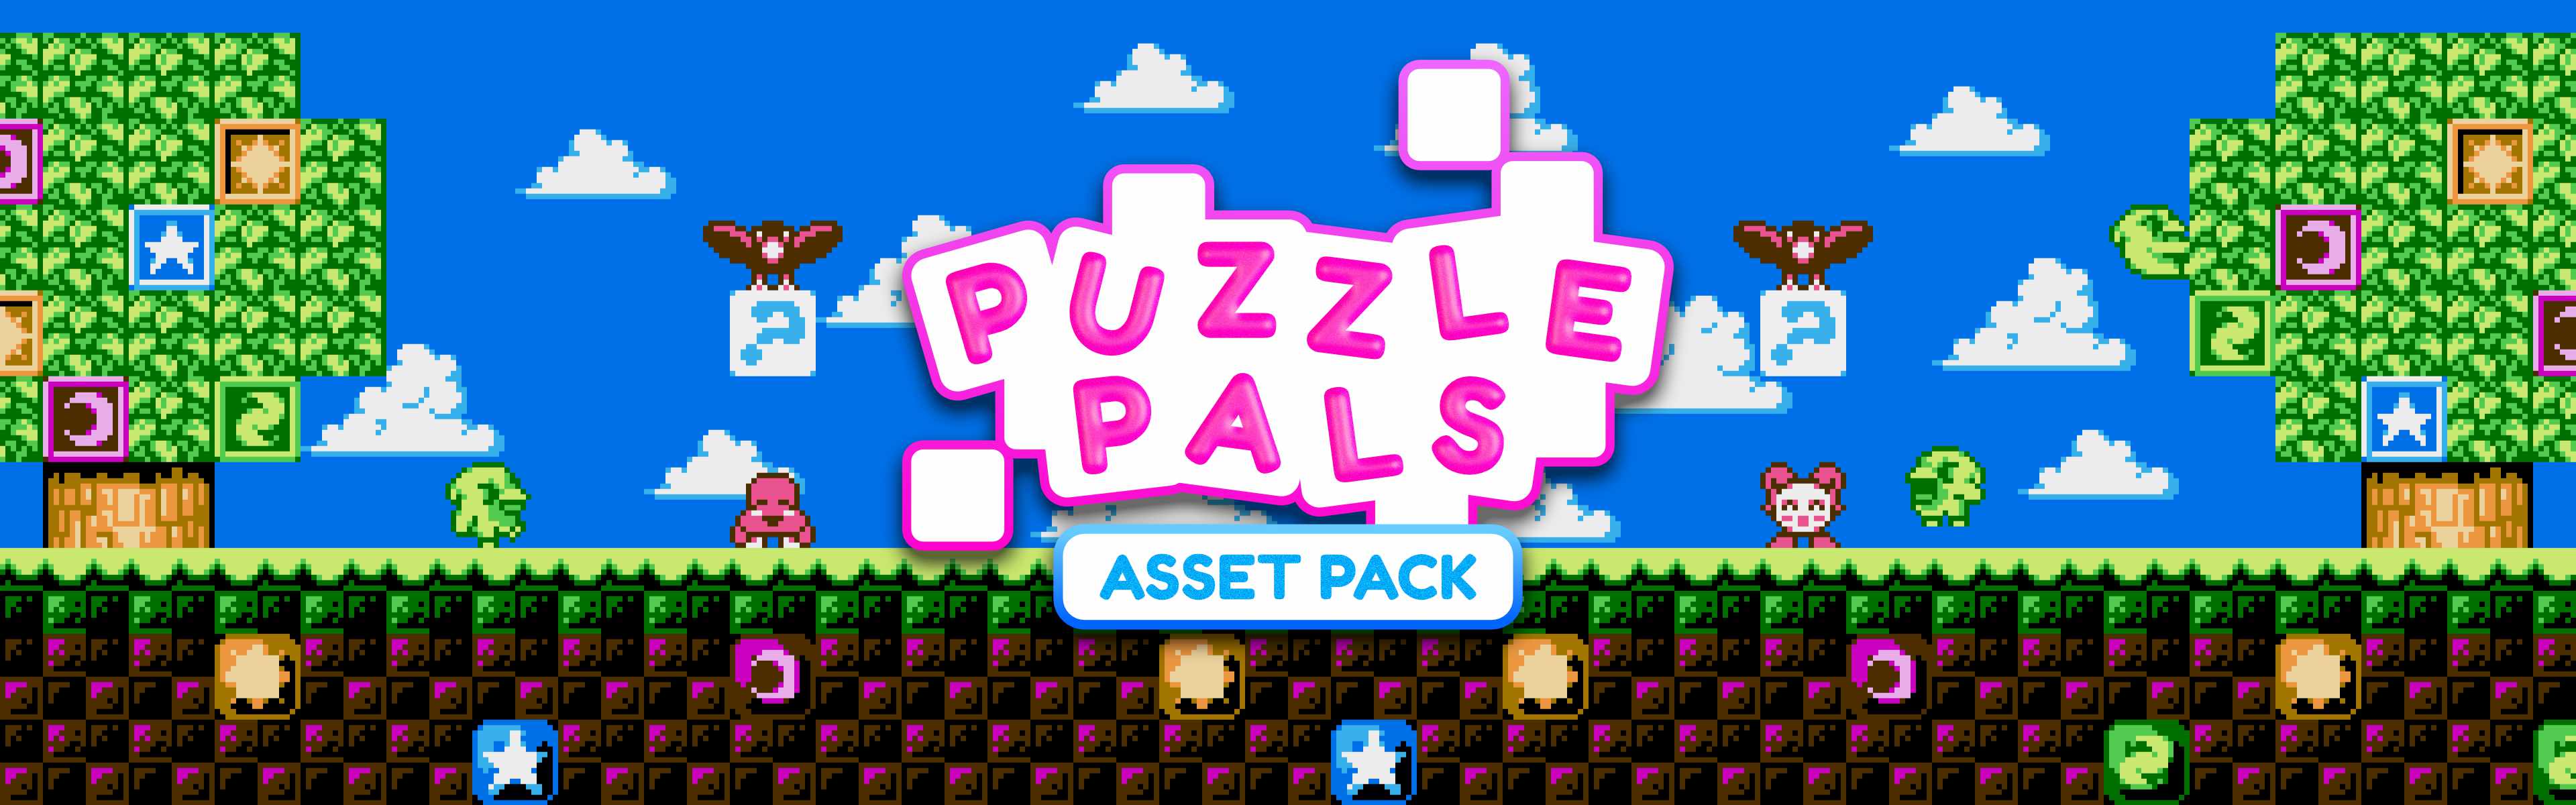 Puzzle Pals Asset Pack